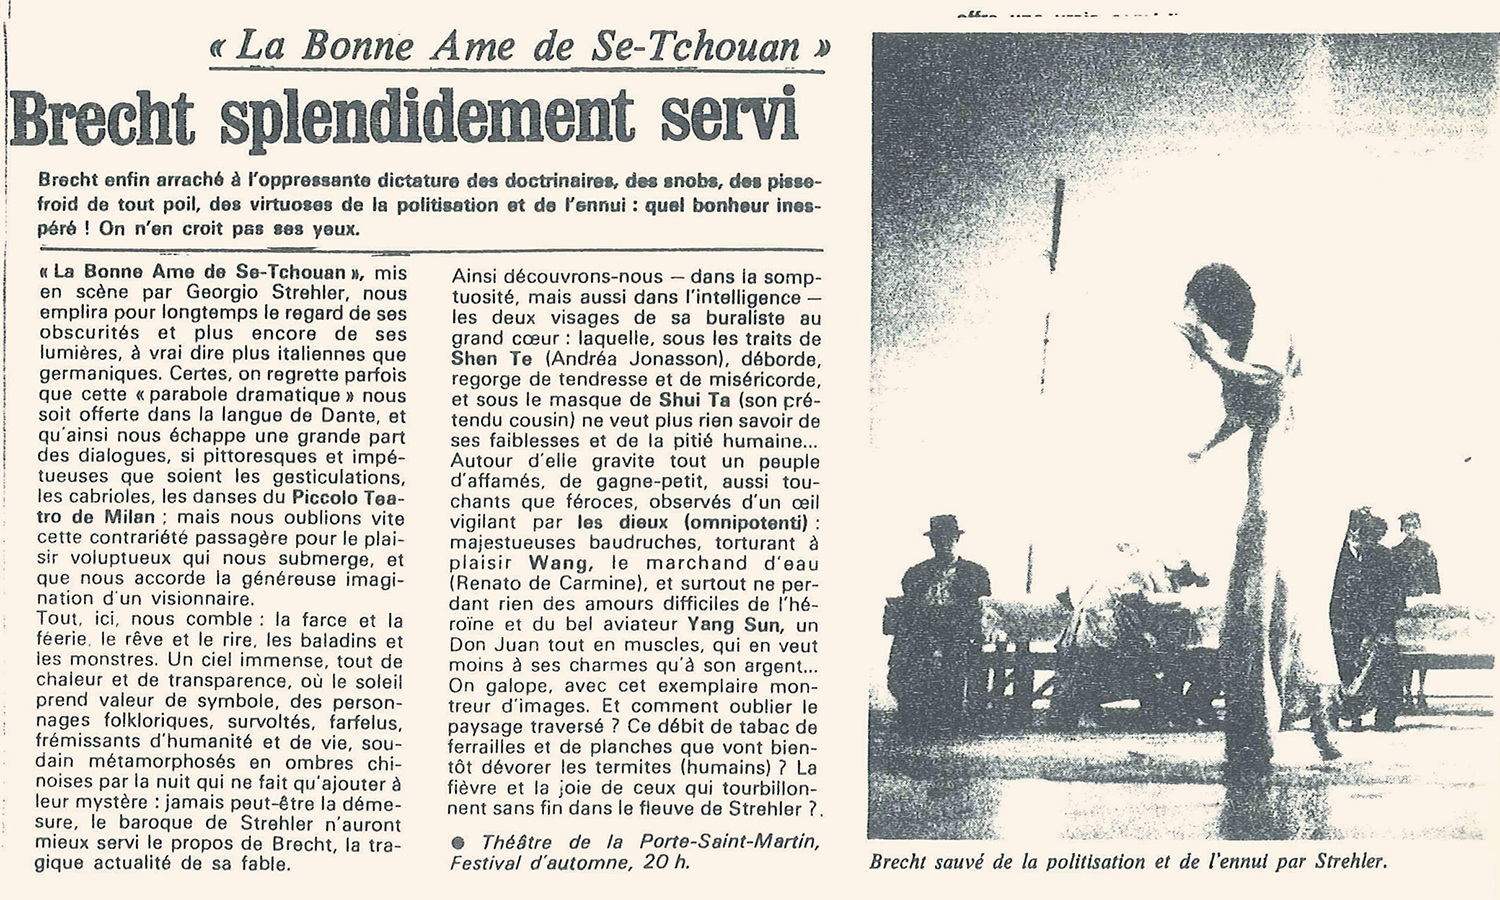 “Le Quotidien du Médecin”, 20 ottobre 1982 - Archivio Piccolo Teatro di Milano